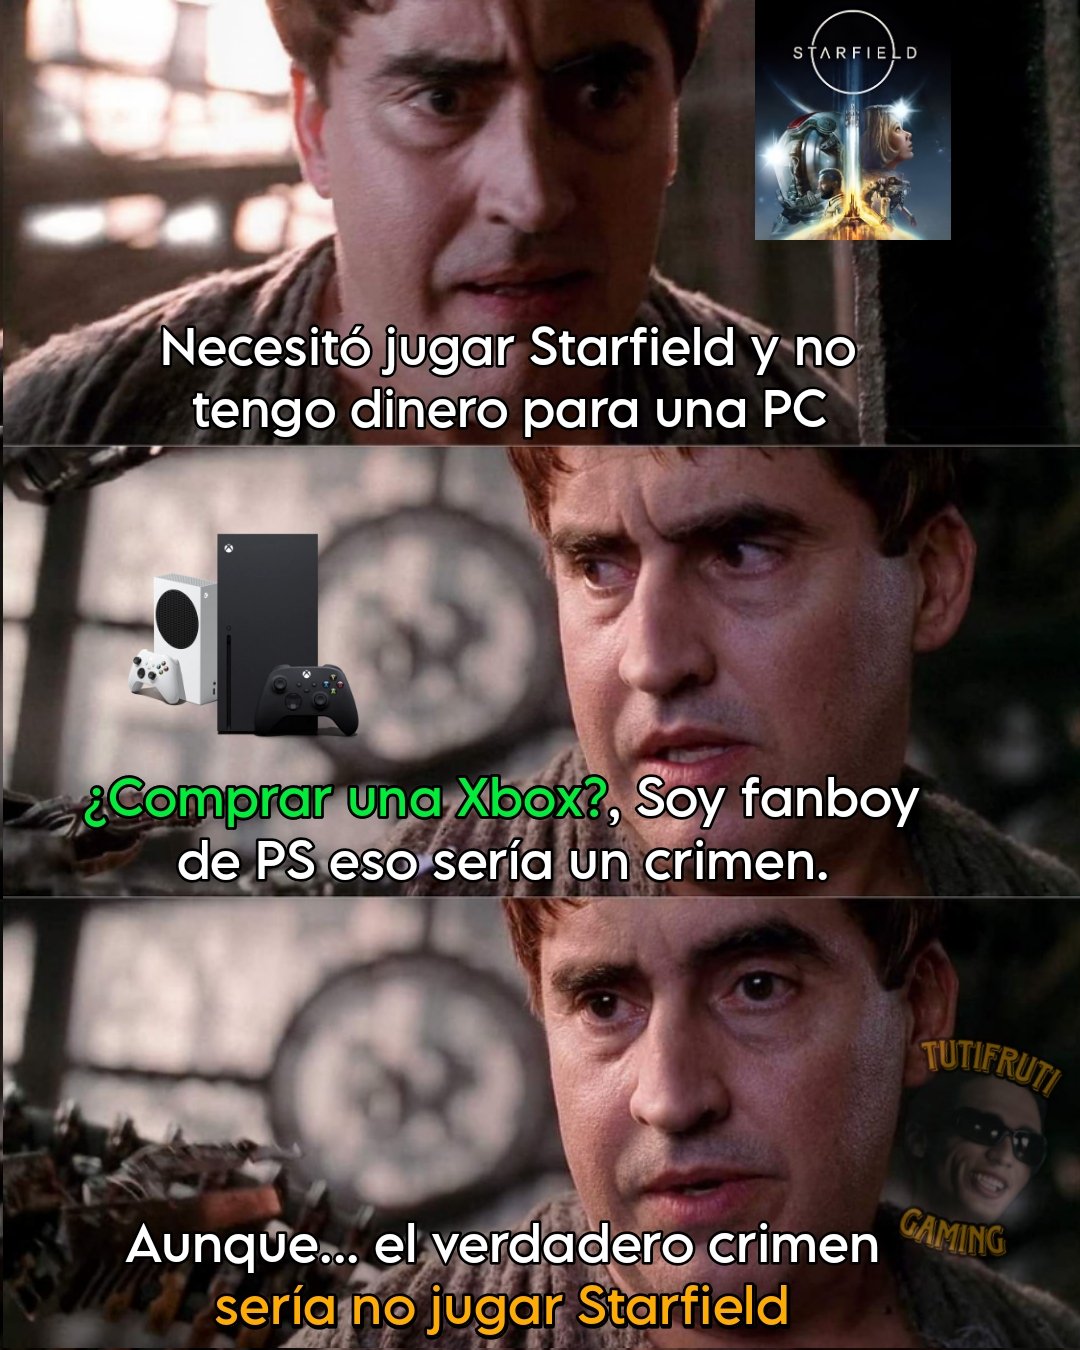 GameVicio Brasil - O Que estão achando do Starfield? #gamer #starfield  #playstation #xbox #nintendo #gamevicio #meme